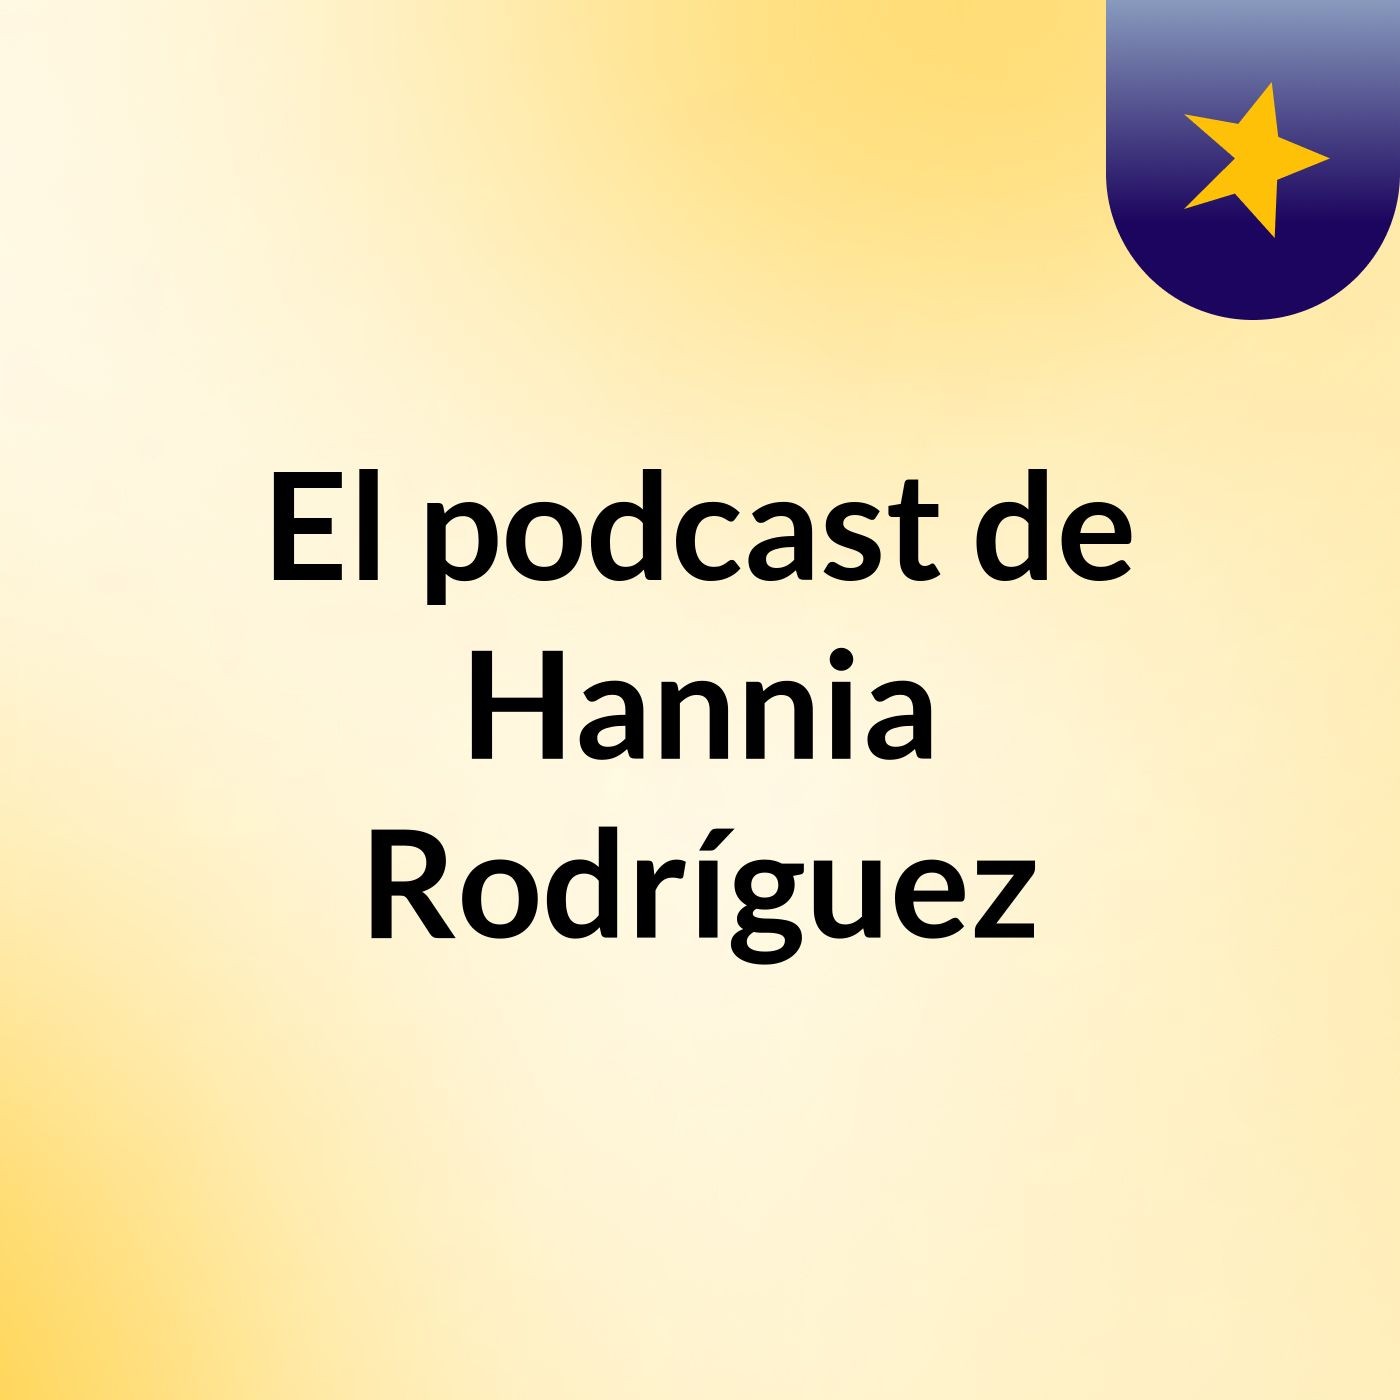 El podcast de Hannia Rodríguez